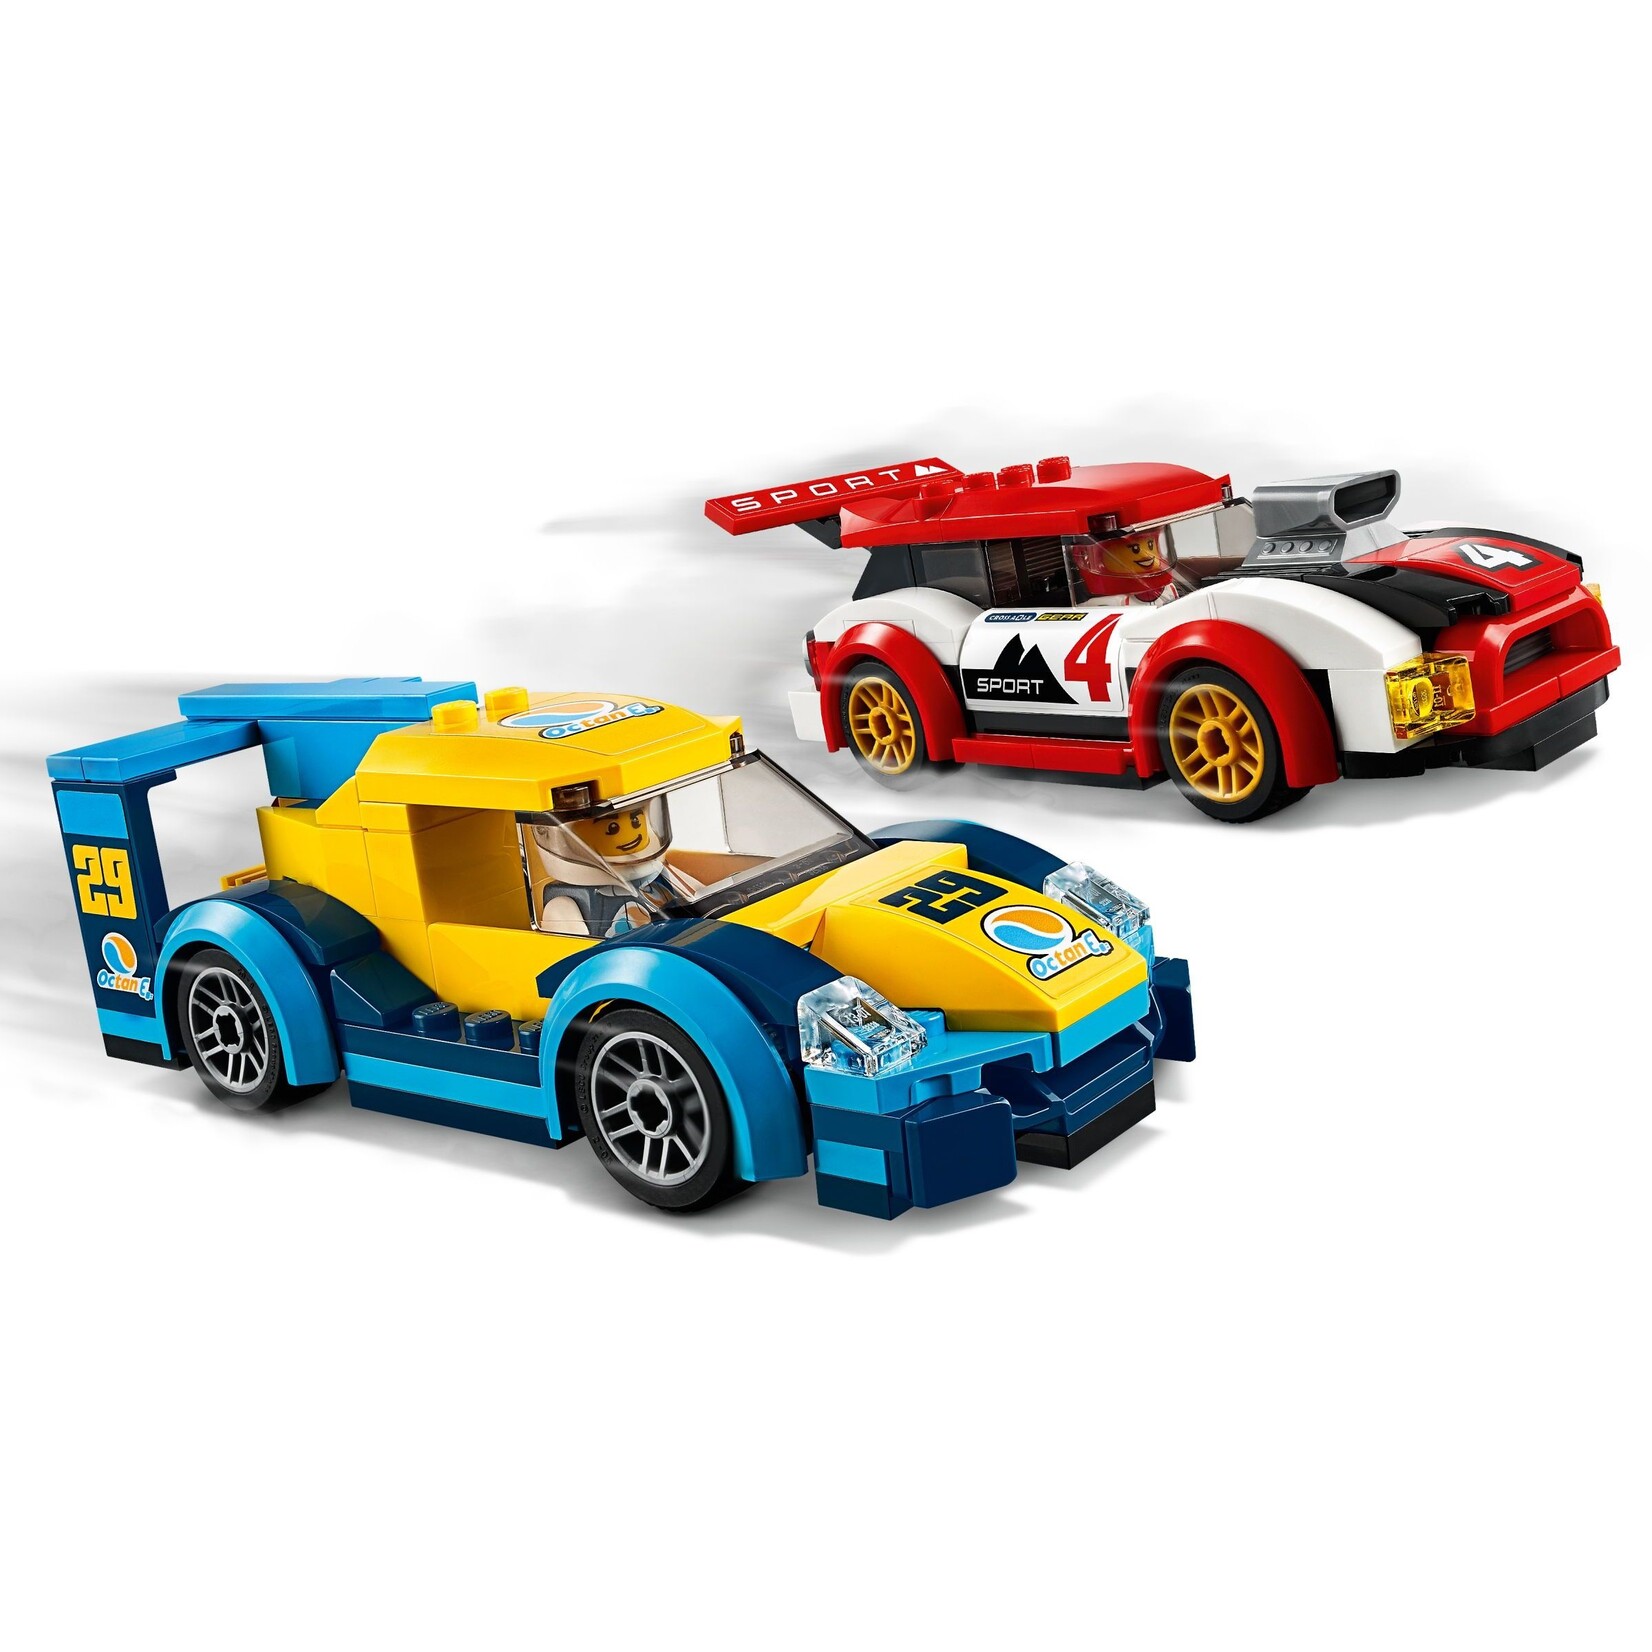 LEGO Racewagens - 60256